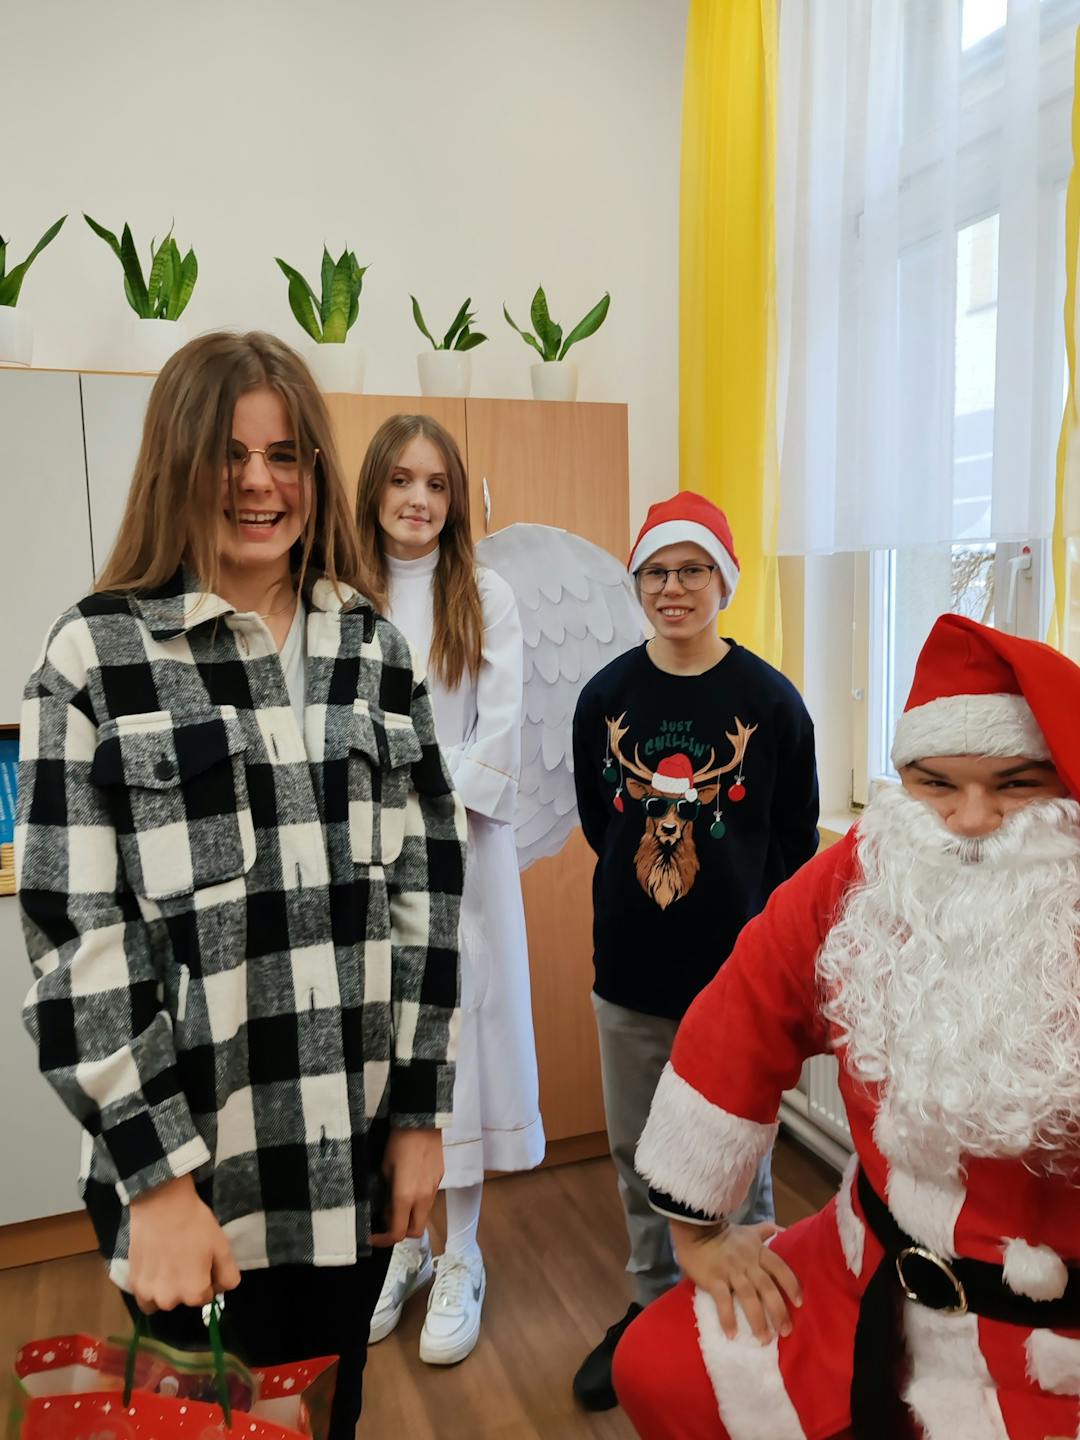 Niezapomniane spotkanie z Mikołajem! | Uczennica w koszuli w kratę przyjmuje prezent od Mikołaja.jpg